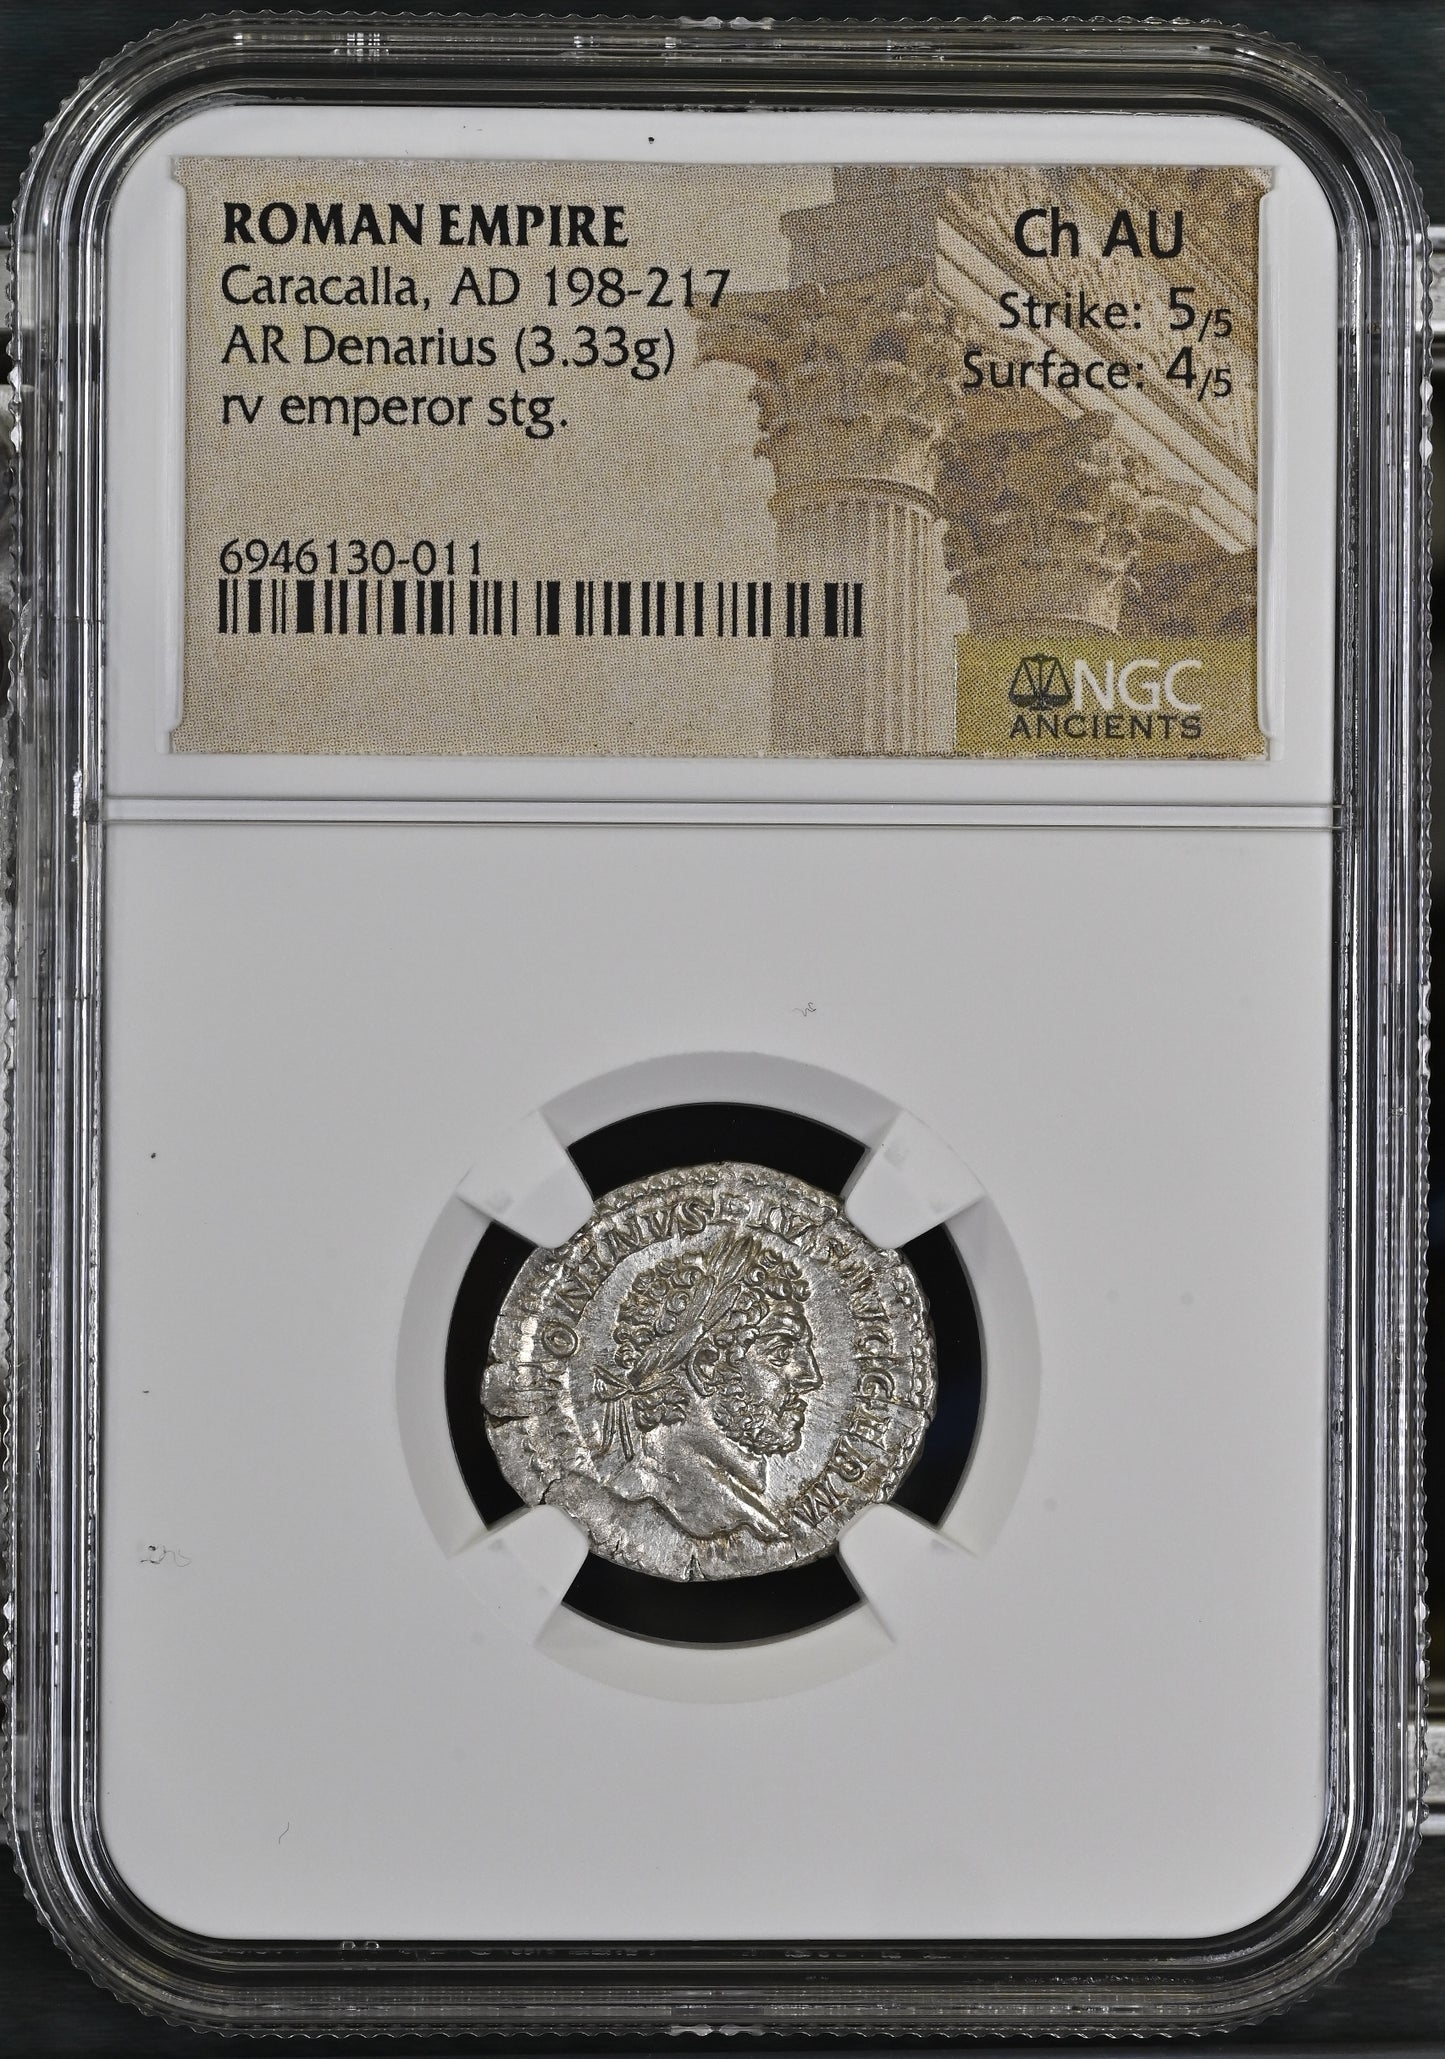 Roman Empire - Caracalla - Silver Denarius - NGC Ch AU - RIC:246